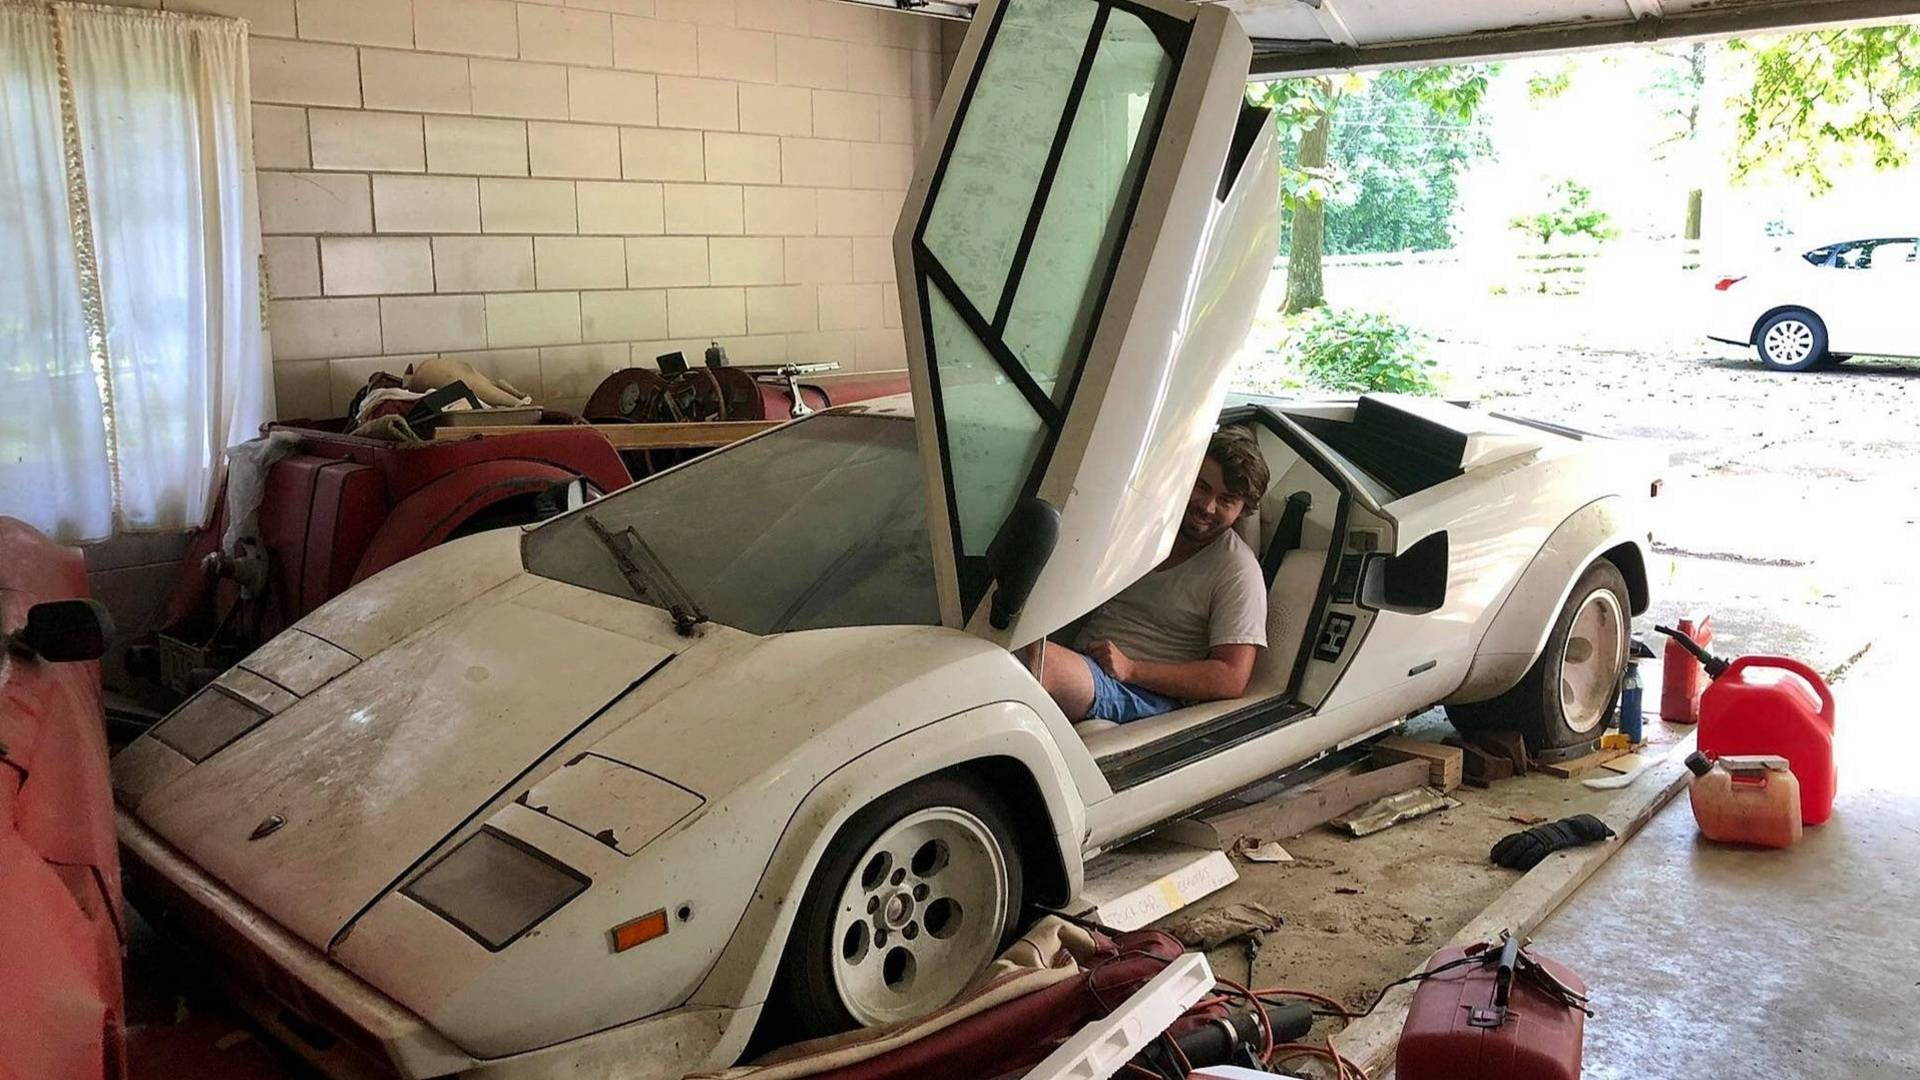 Grandma's 1981 Lamborghini Countach is still cool even covered in dust